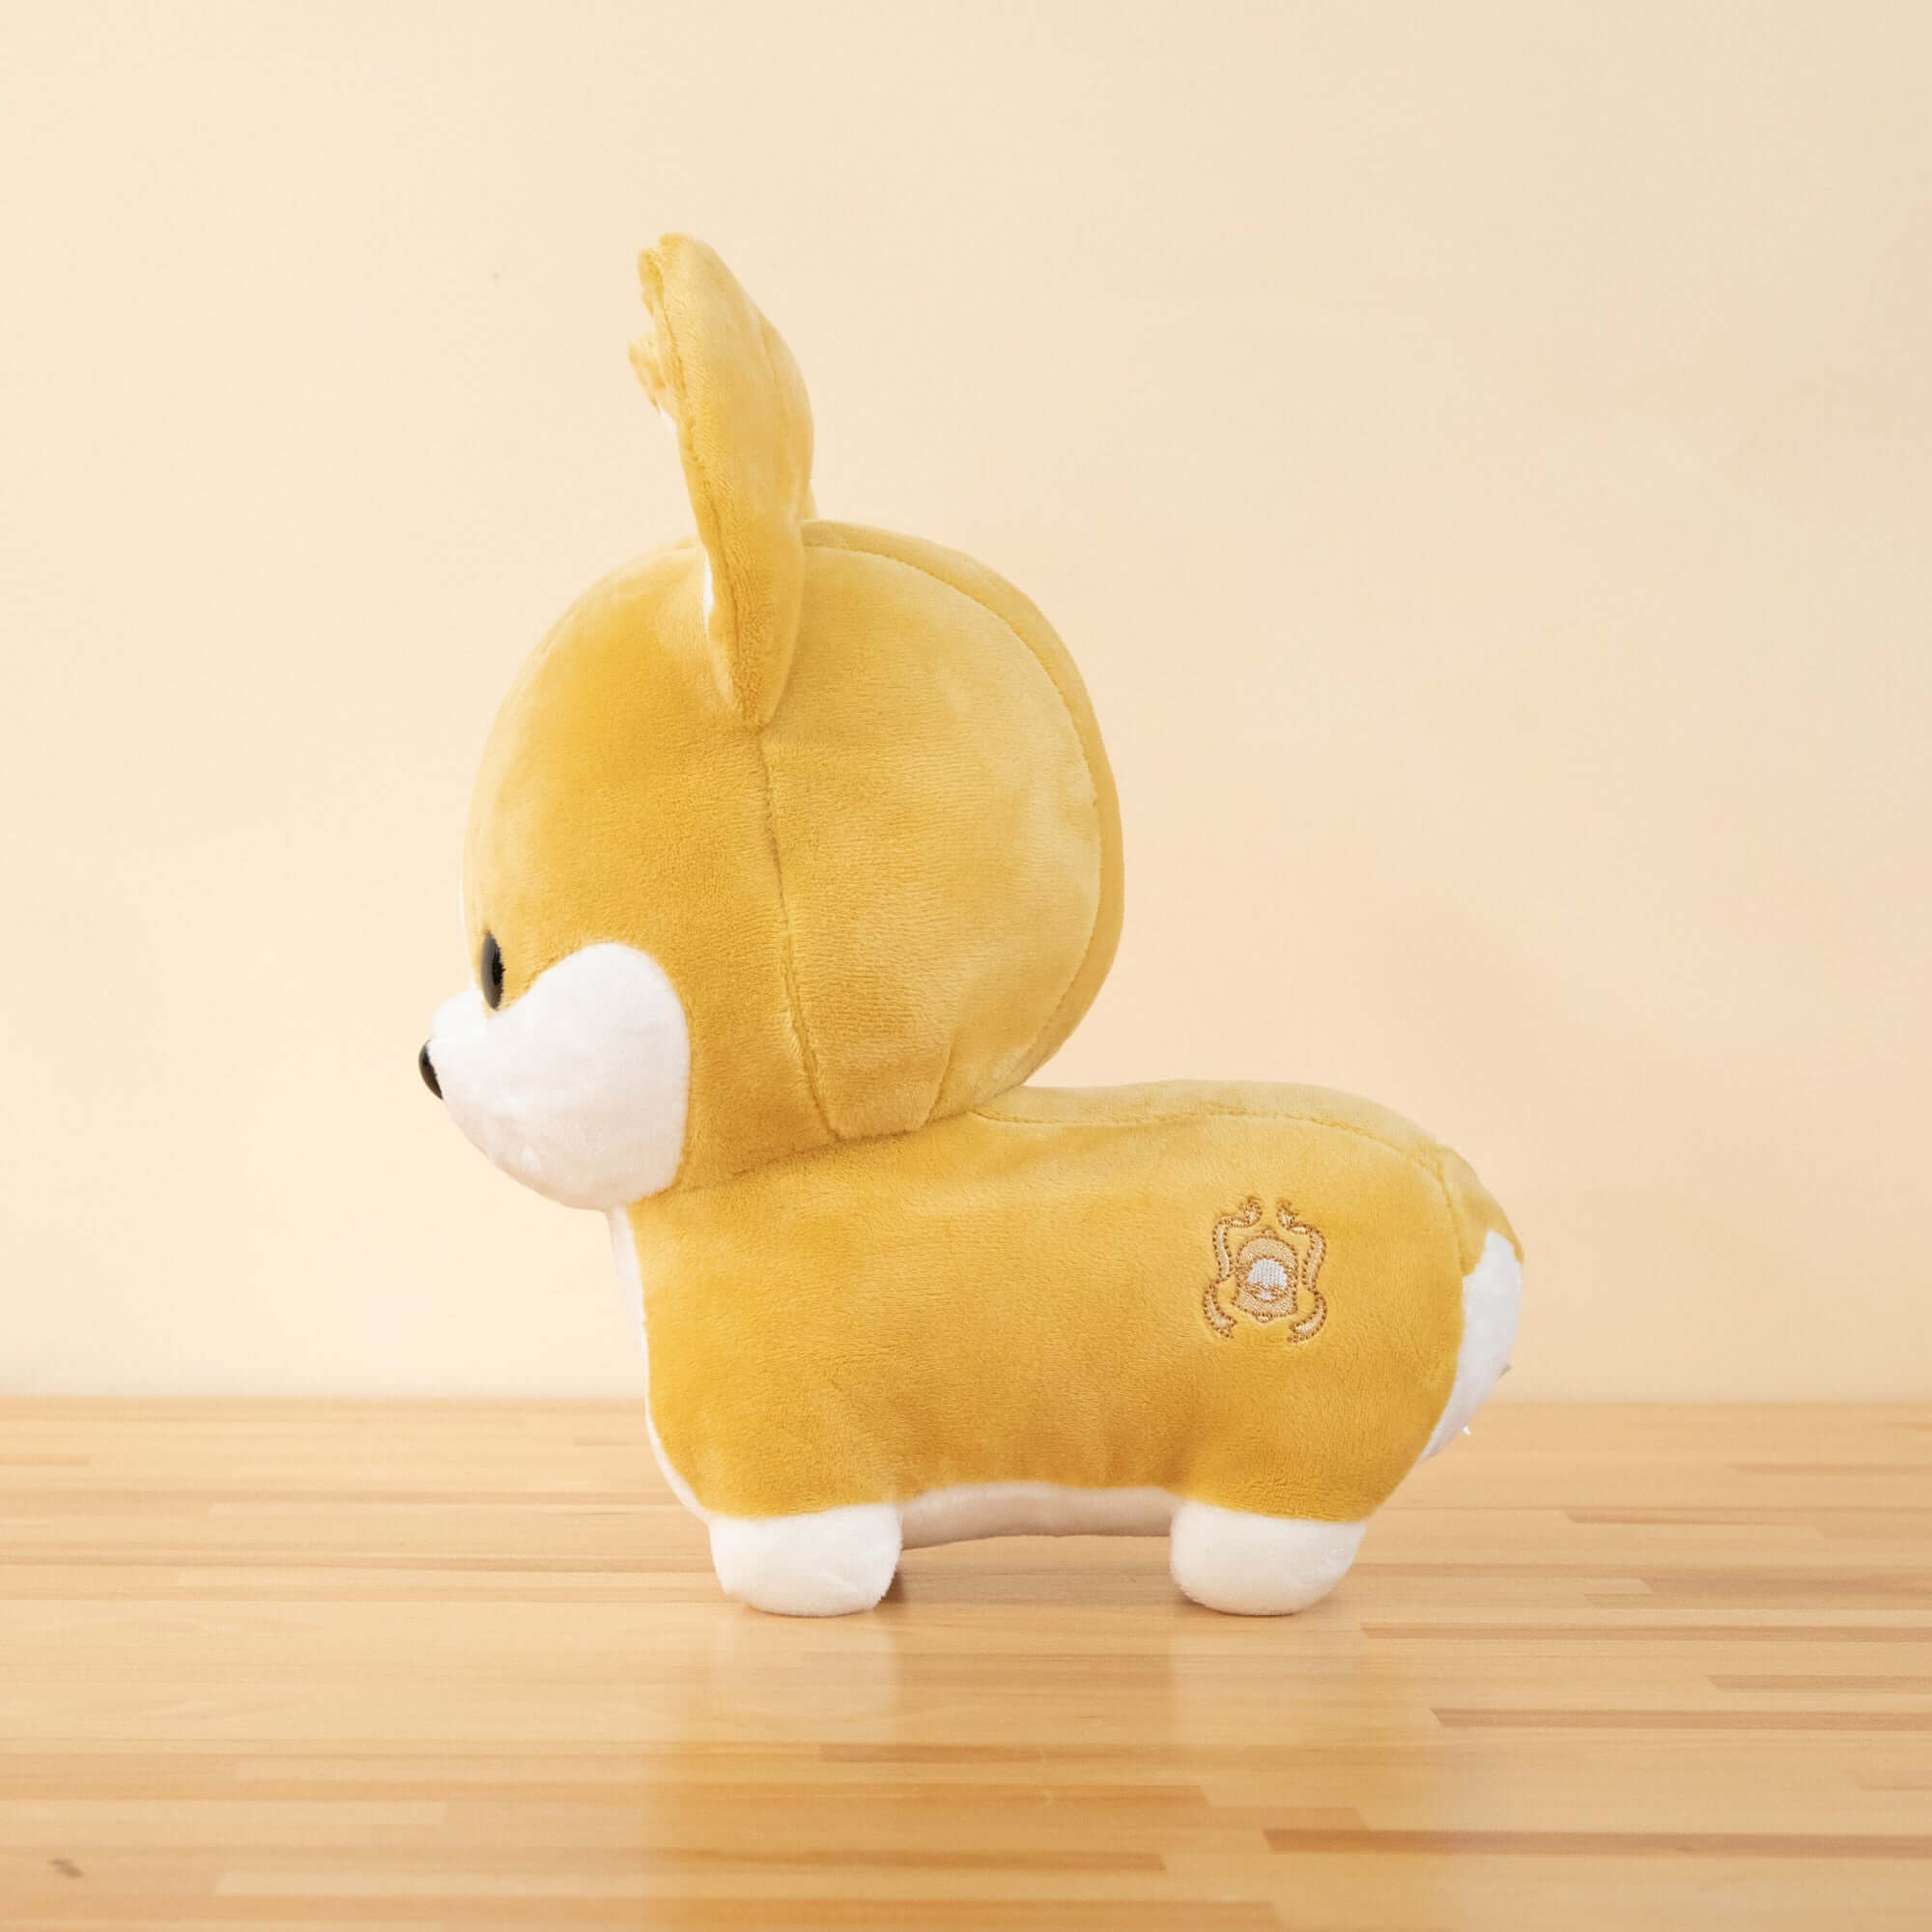 Corgi Dog Plush Stuffed Toy – Cozy Up!